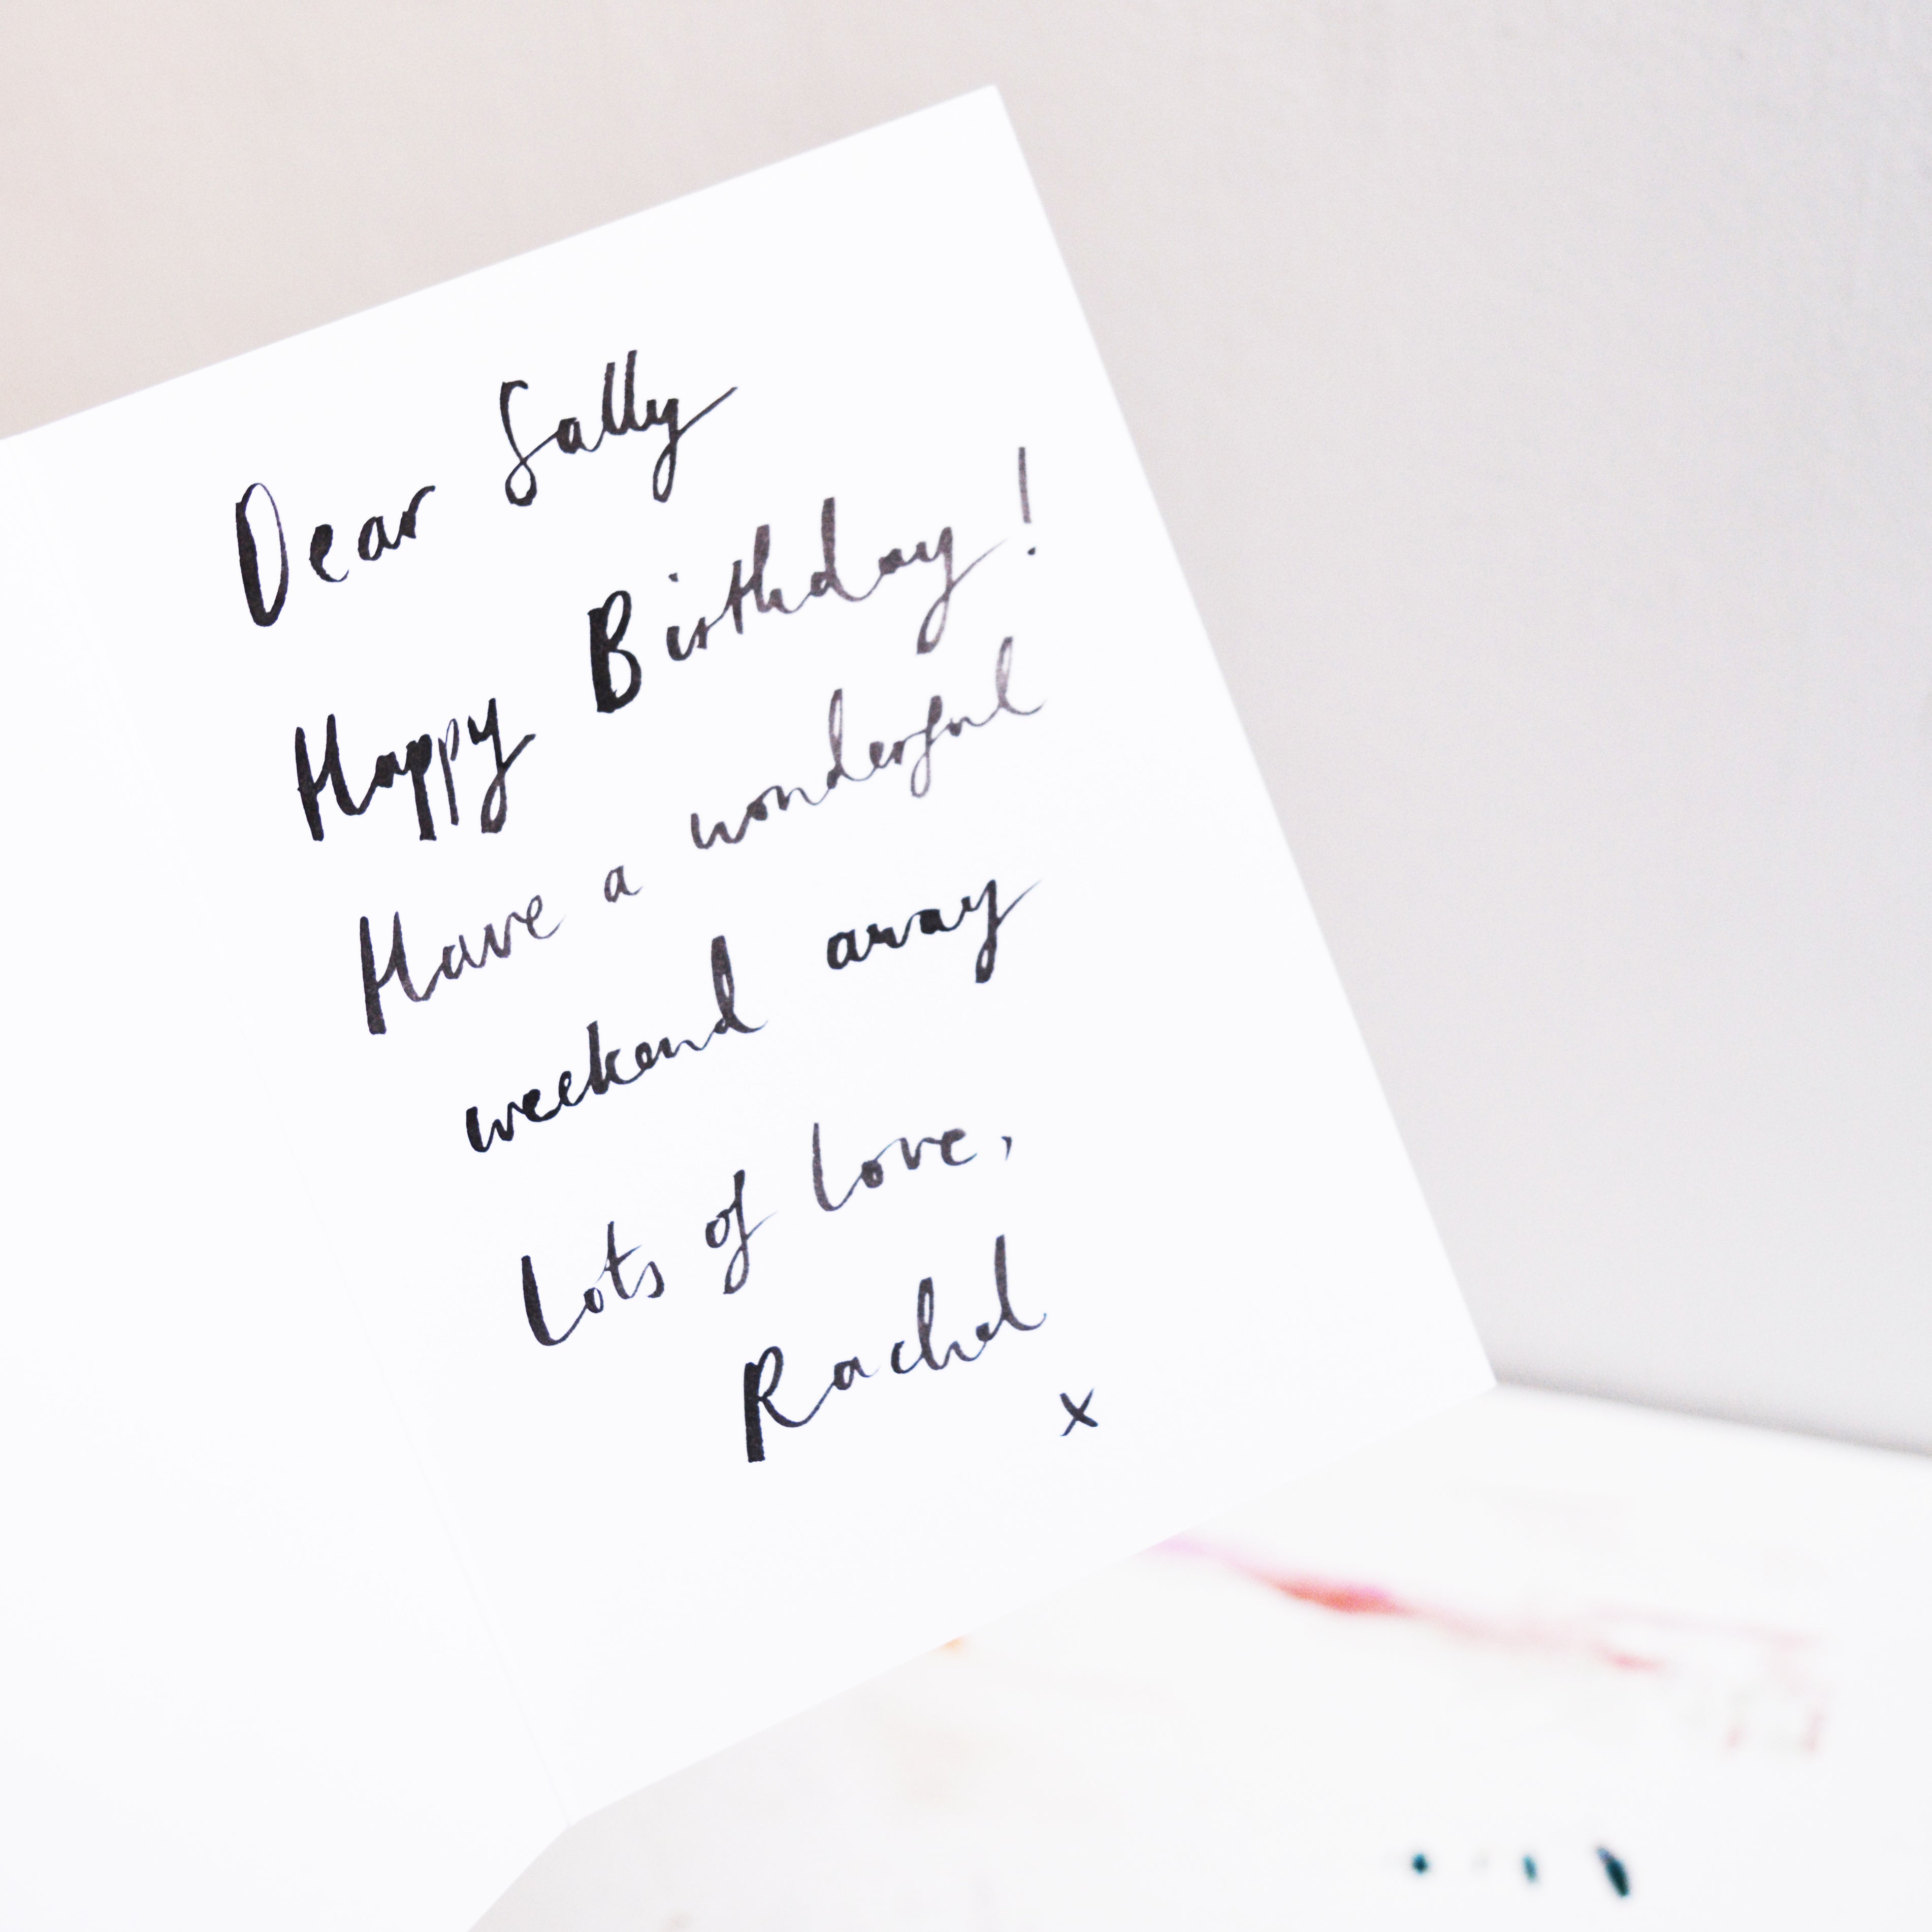 Basset Hound Birthday Card